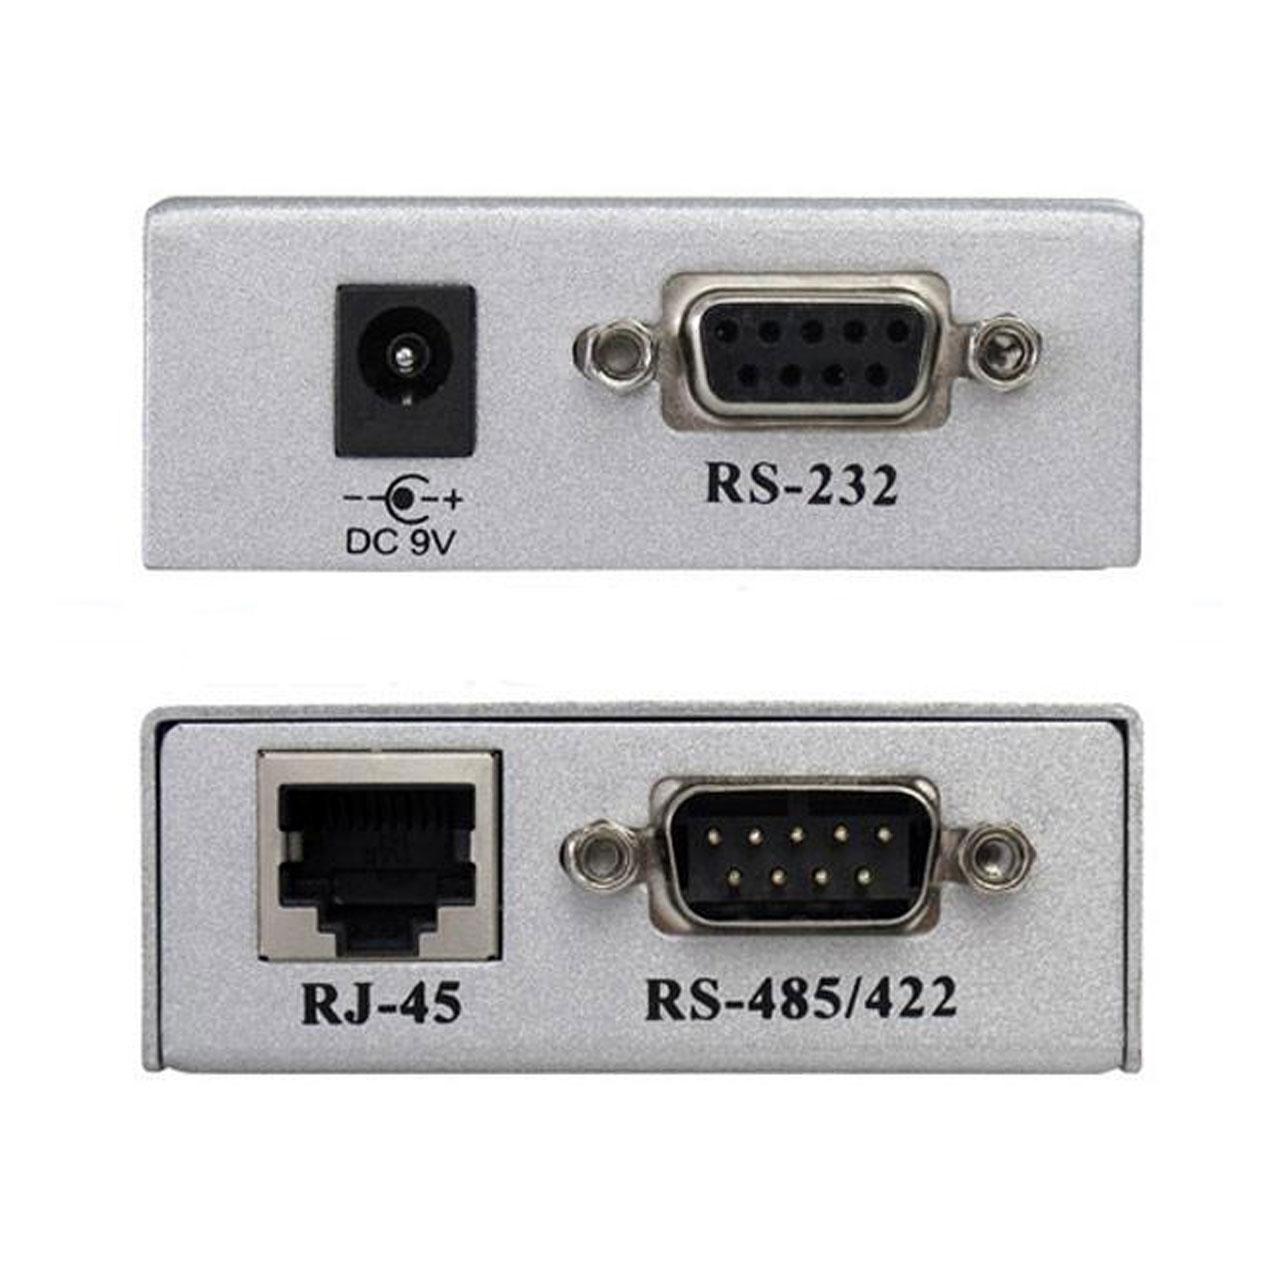 تبدیل RS232 به RS485/RS422 به همراه آداپتور مدل AT-202